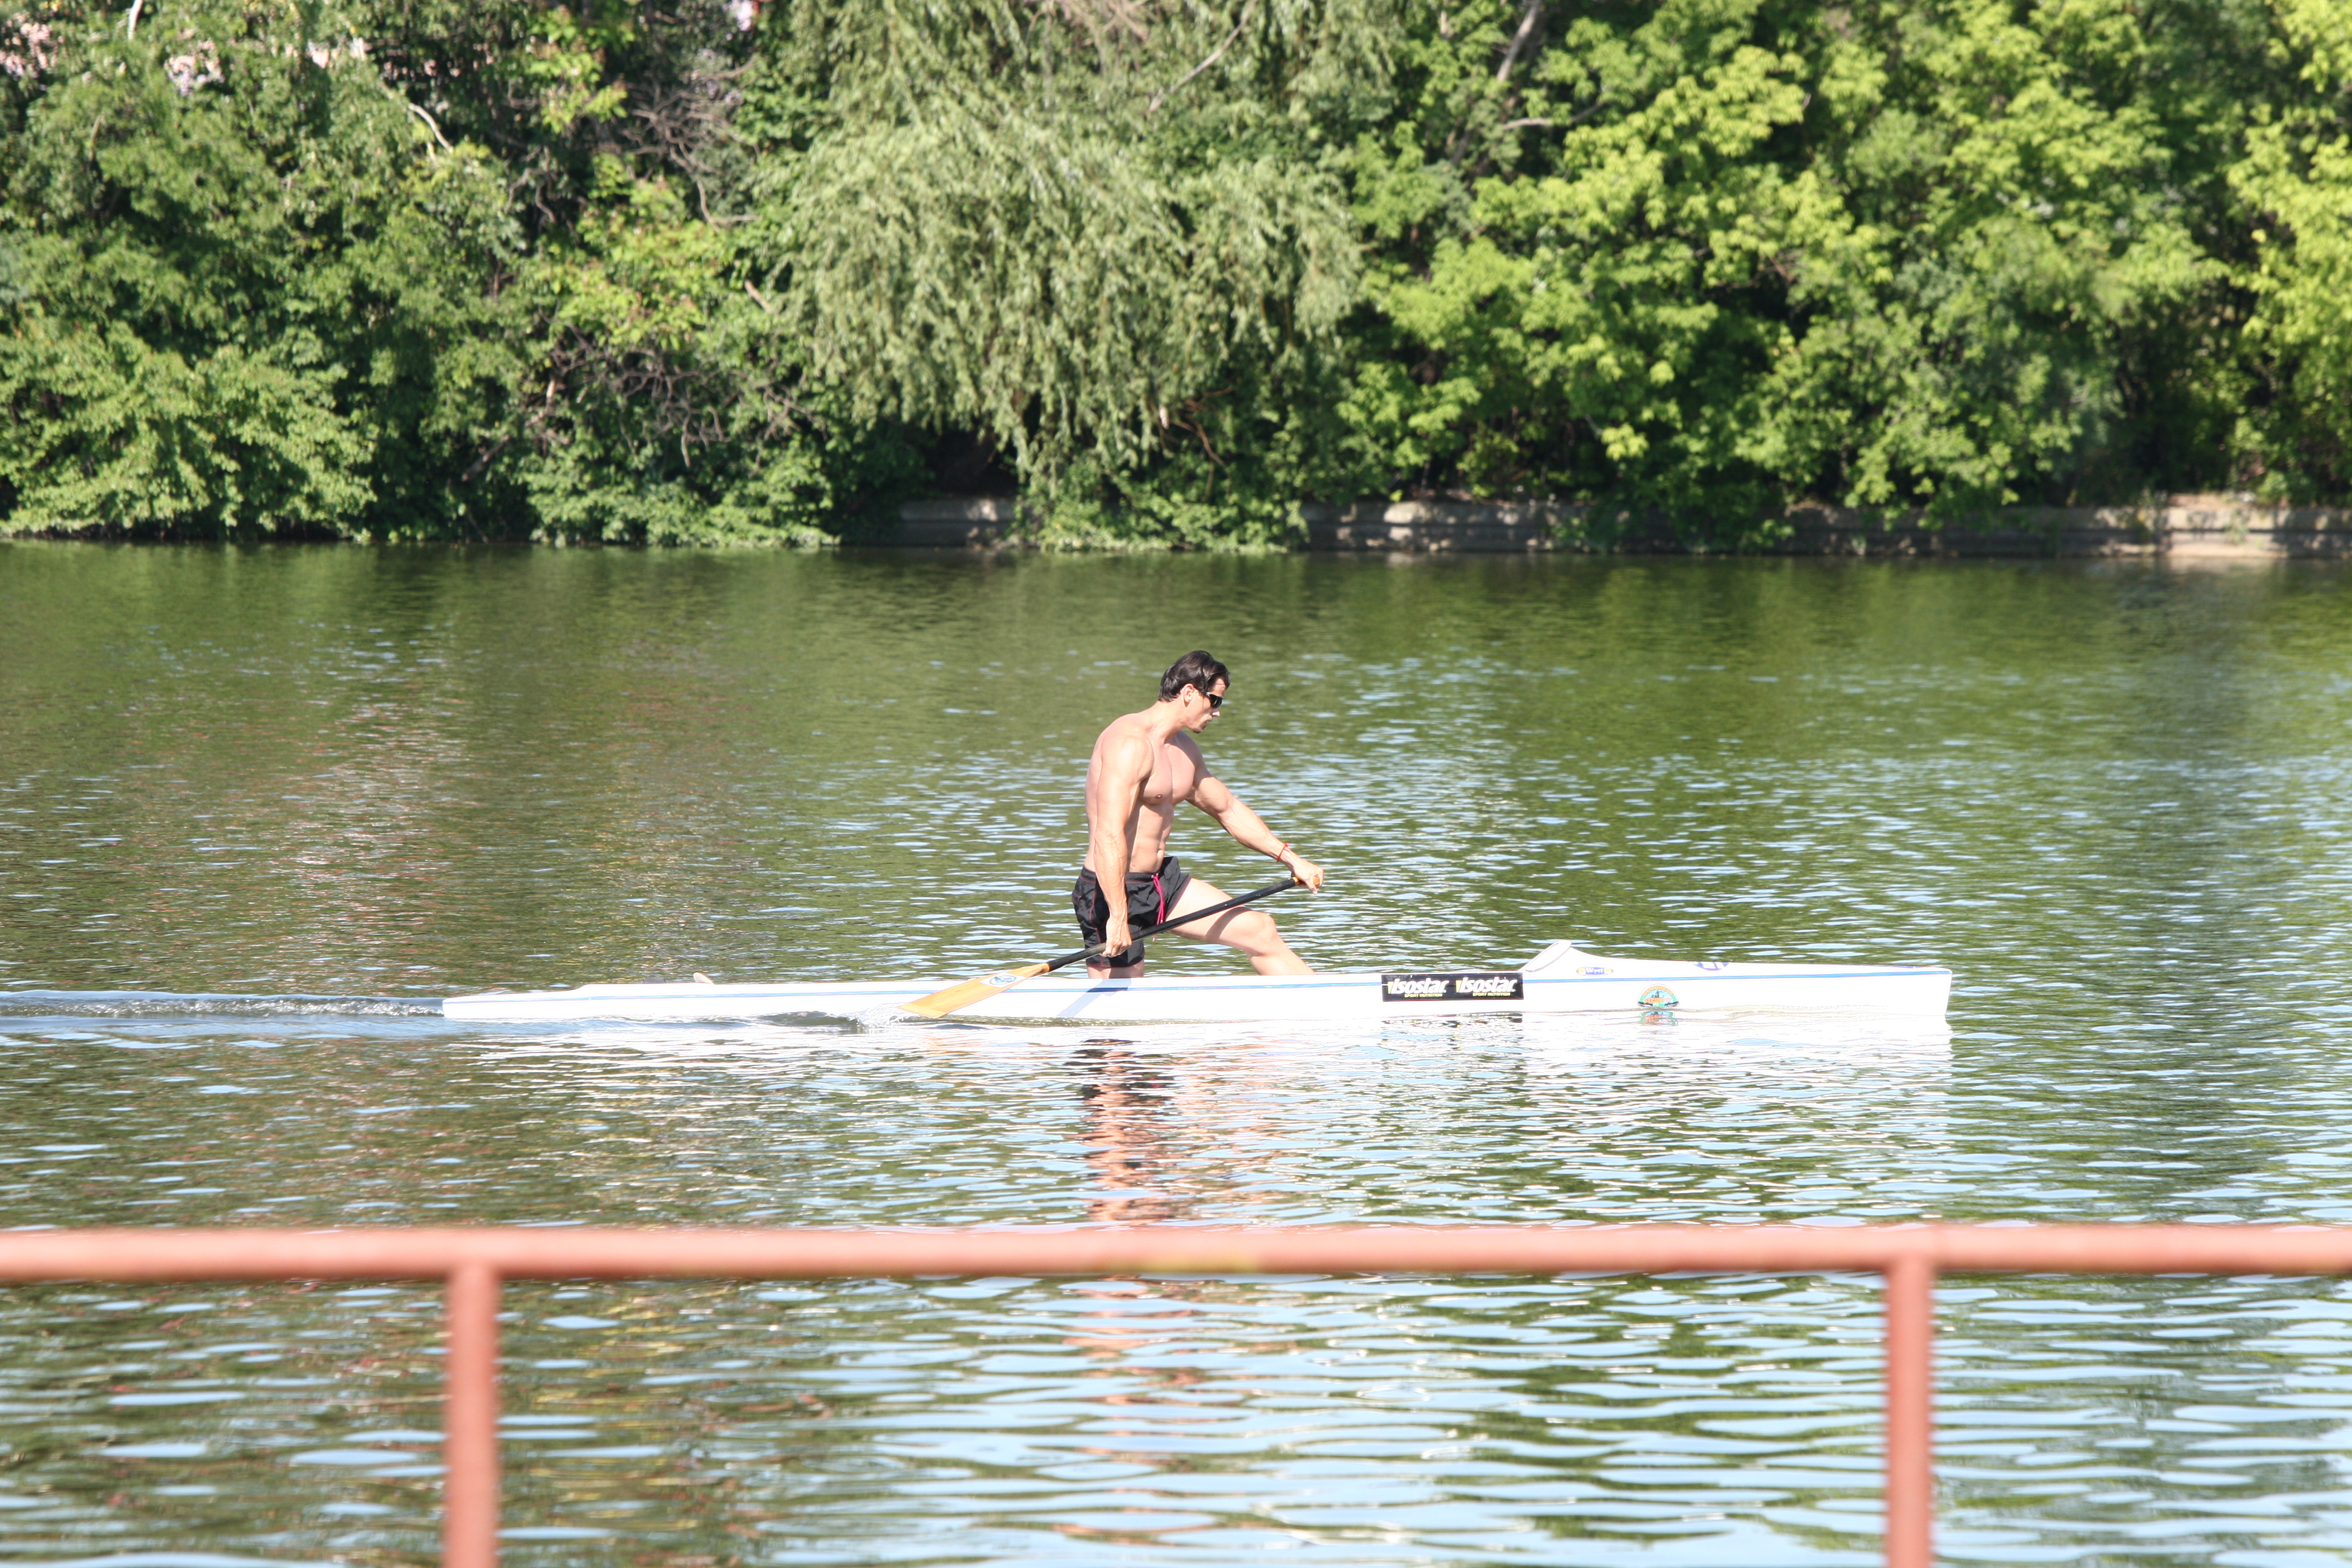 Chiar daca s-a retras din competitii de mai bine de 7 ani, Petre Condrat se antreneaza saptamanal pe lacul Snagov